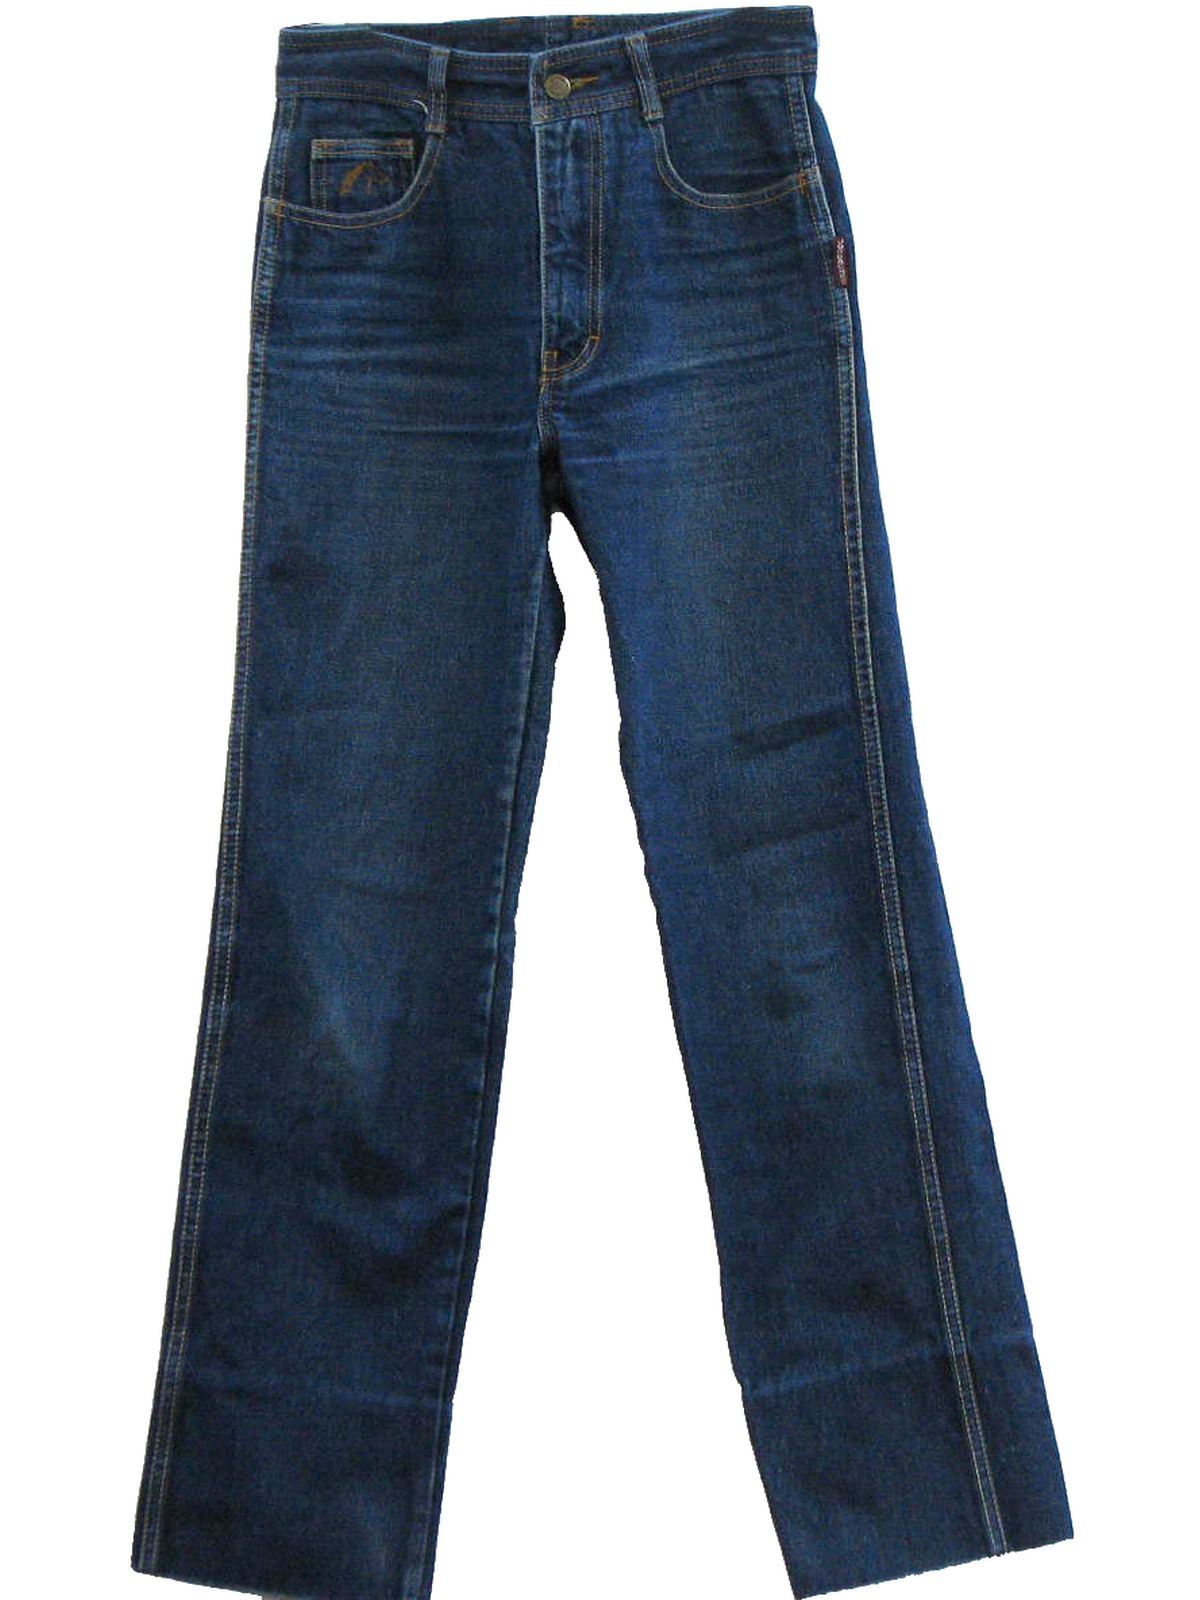 Retro 80s Pants (Jordache) : 80s -Jordache- Mens blue cotton denim five ...